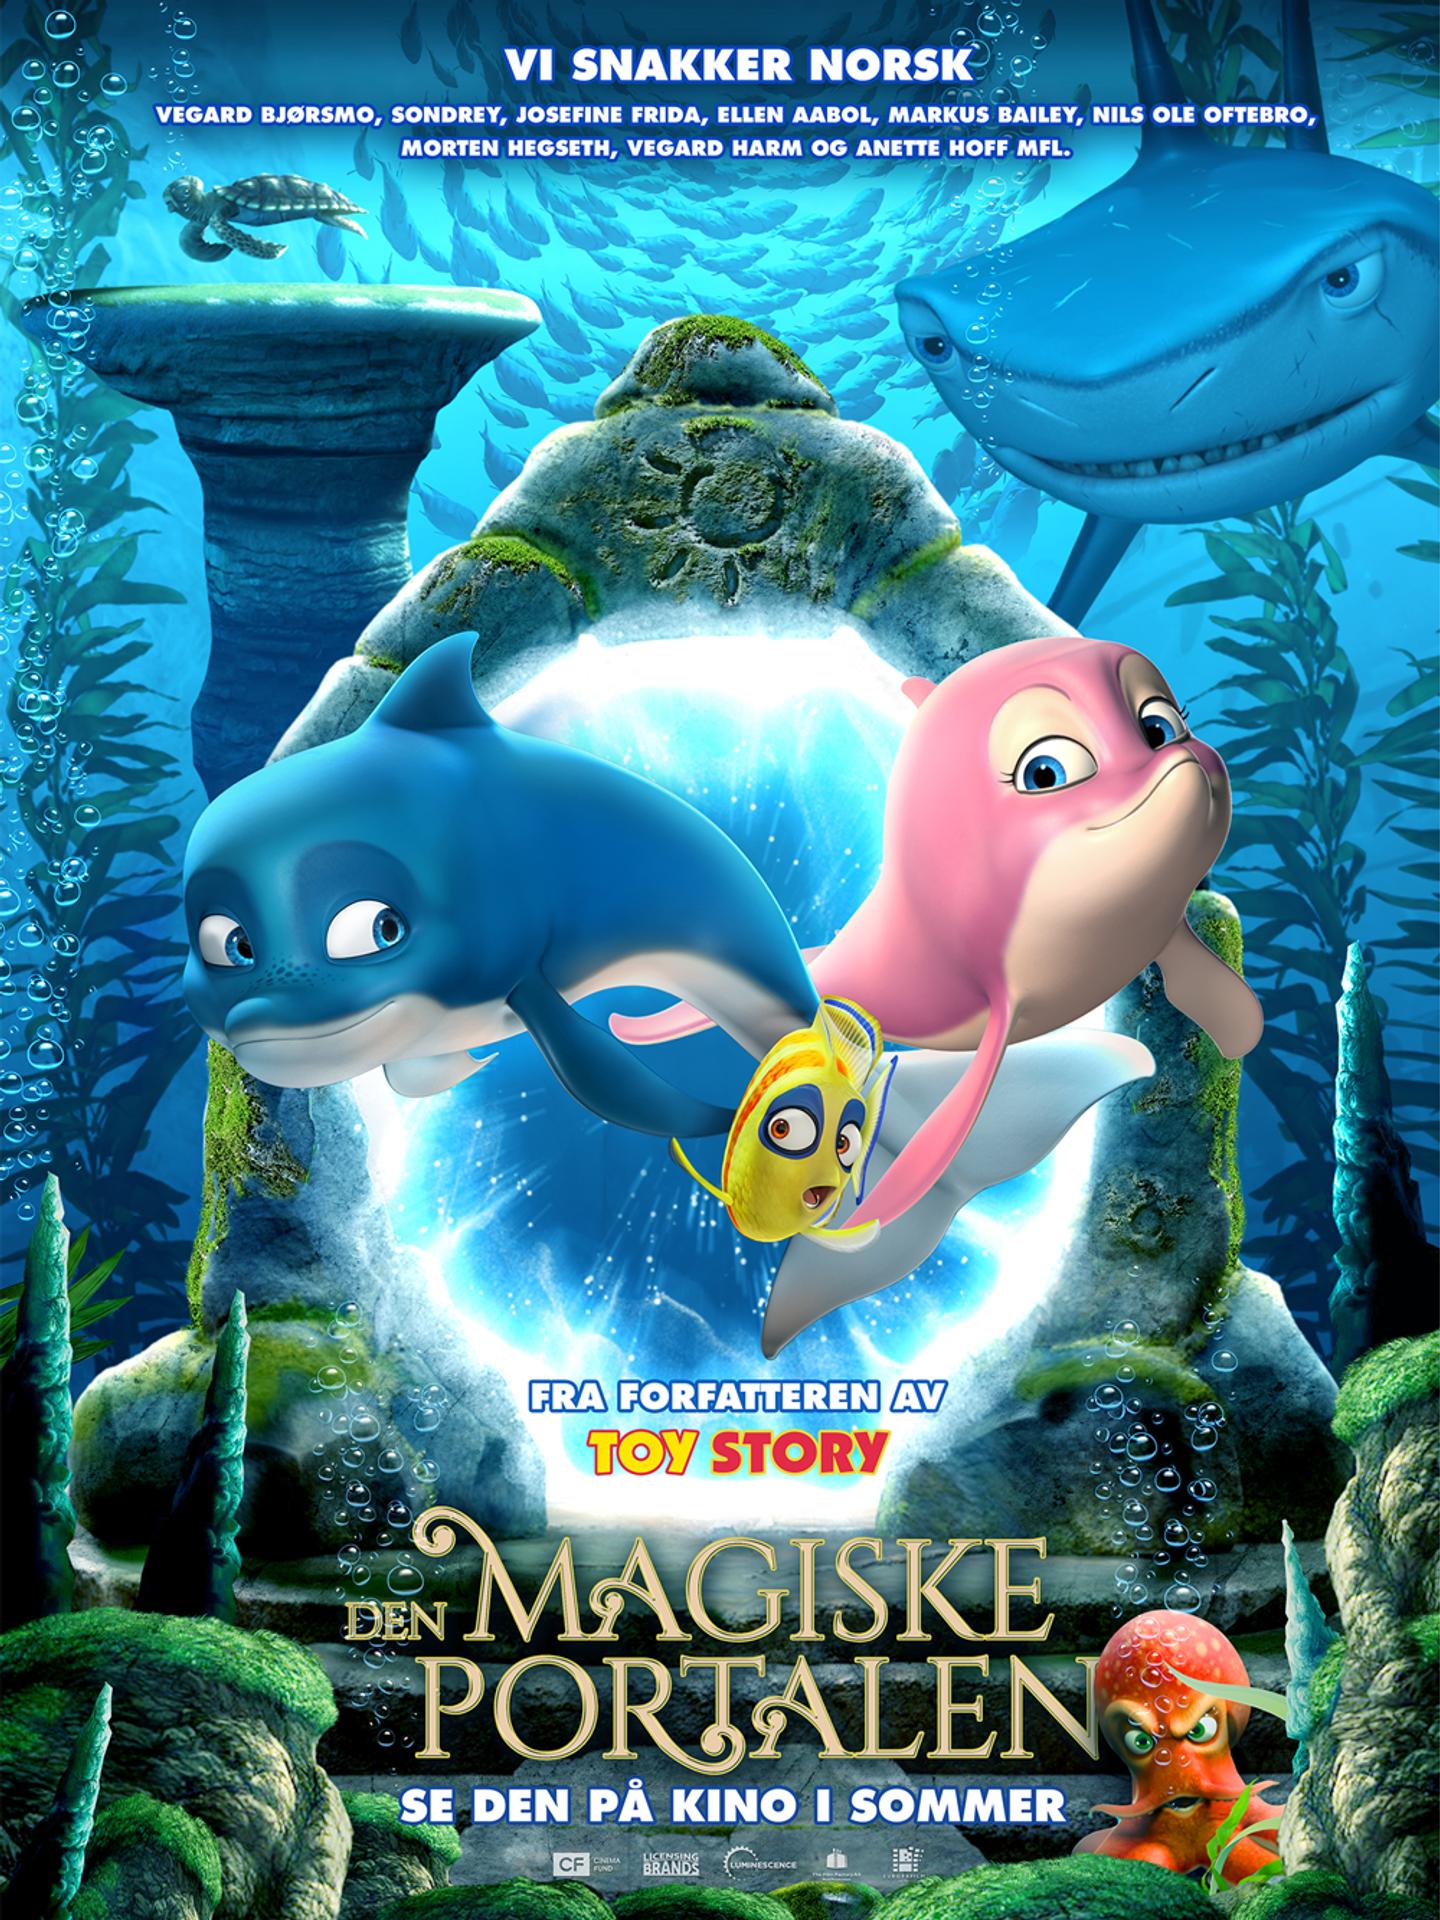 Plakat for 'Den magiske portalen'